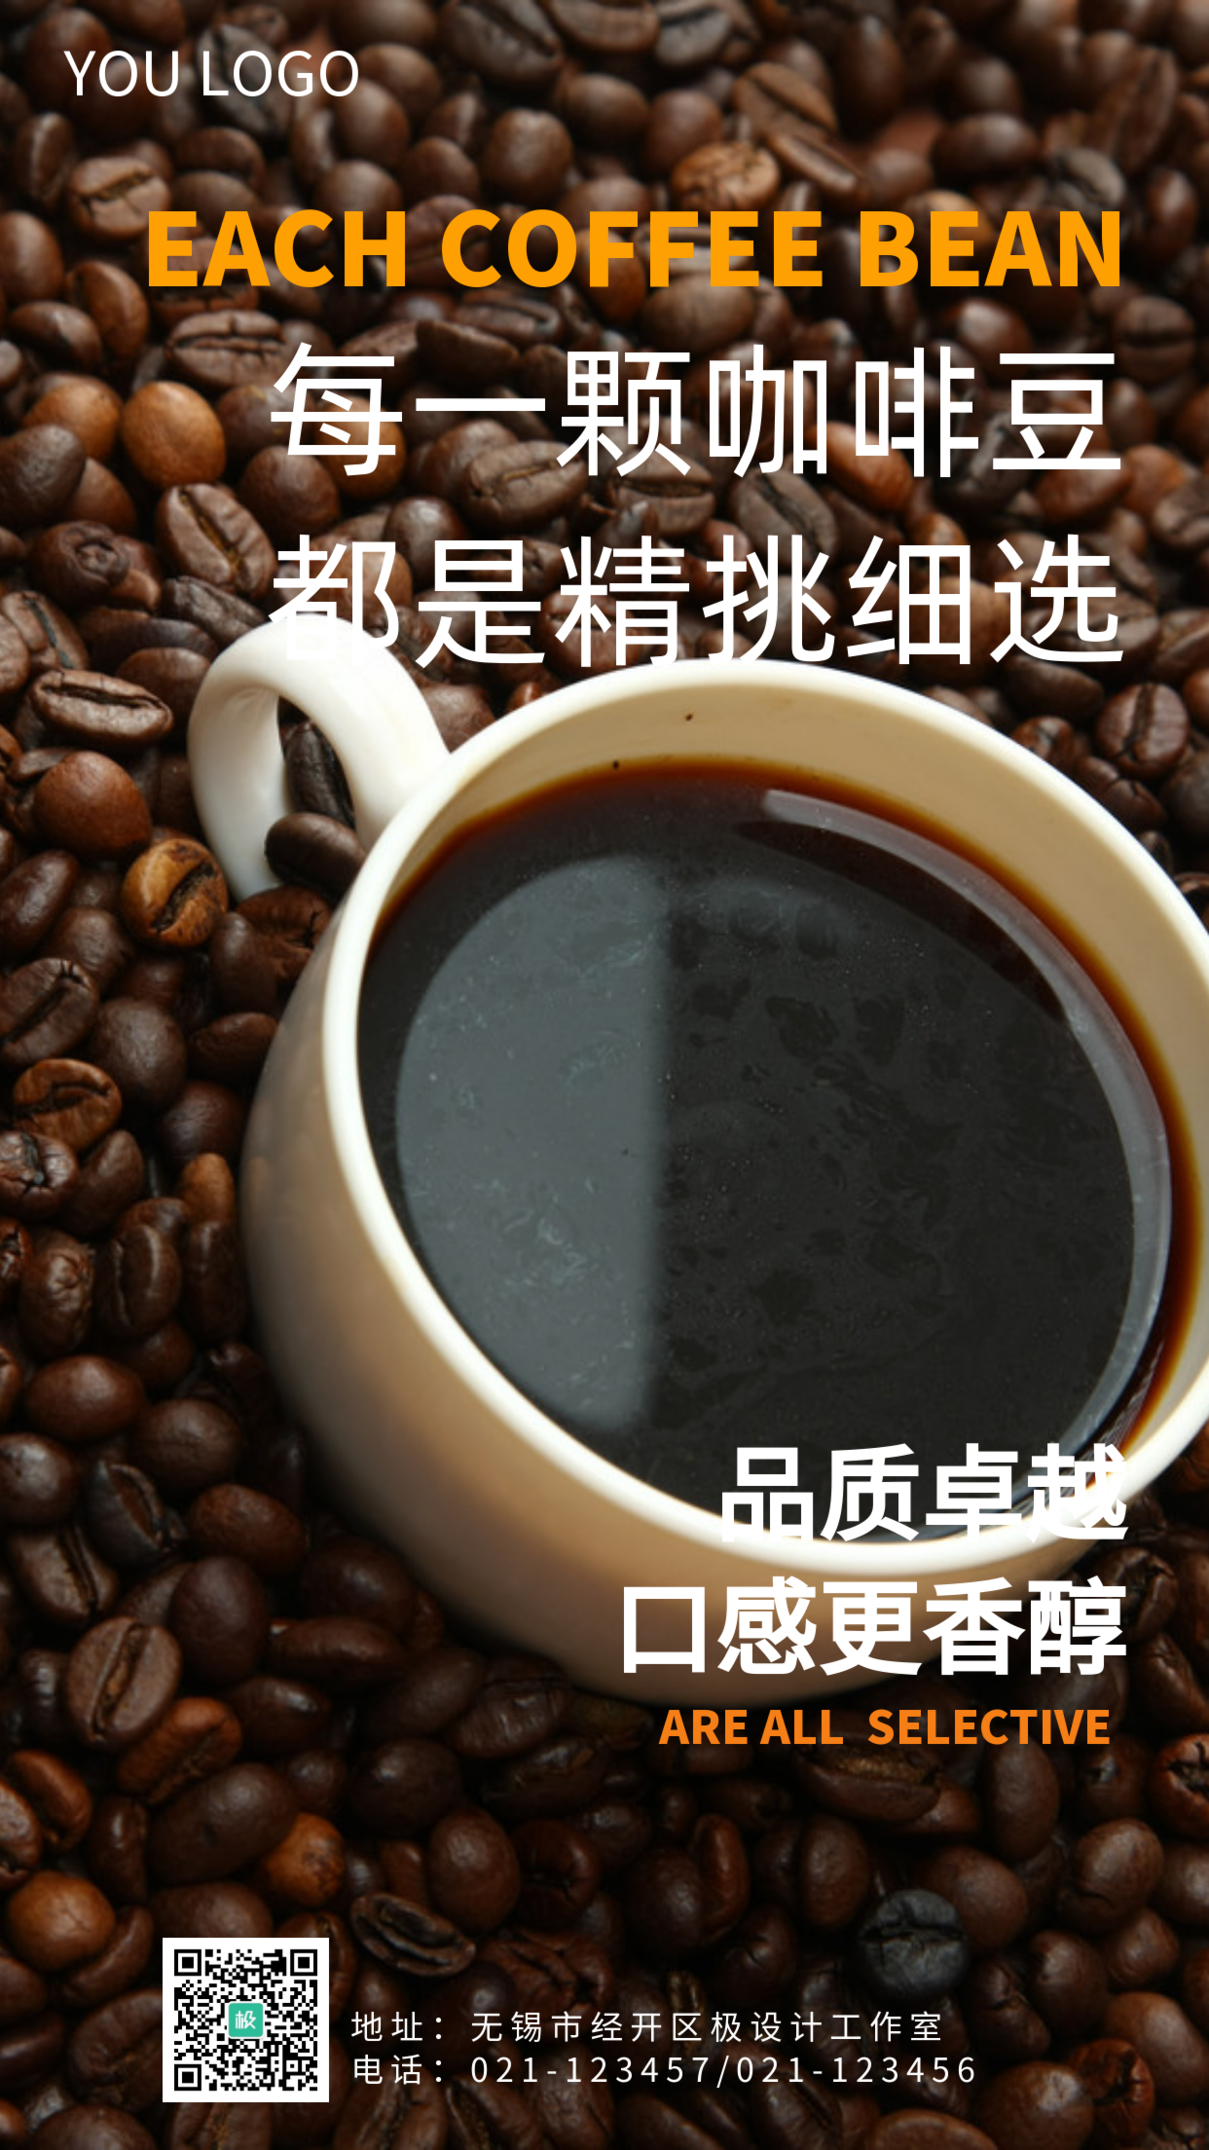 咖啡豆都是精挑细选手机营销海报